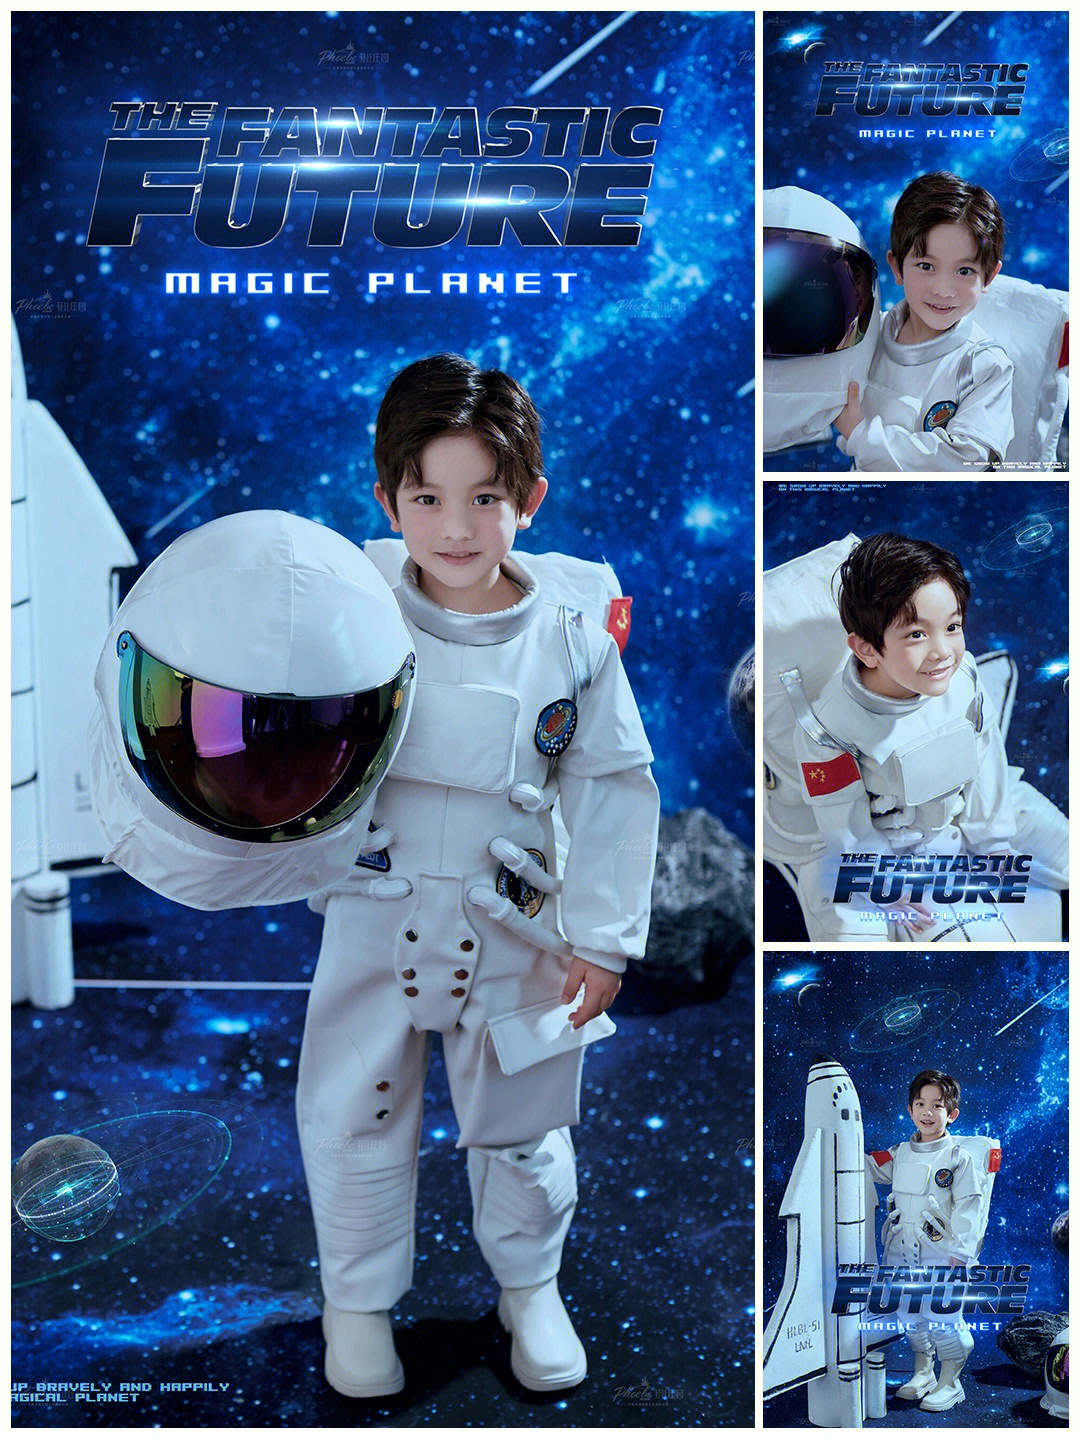 喜之郎太空人广告原版图片